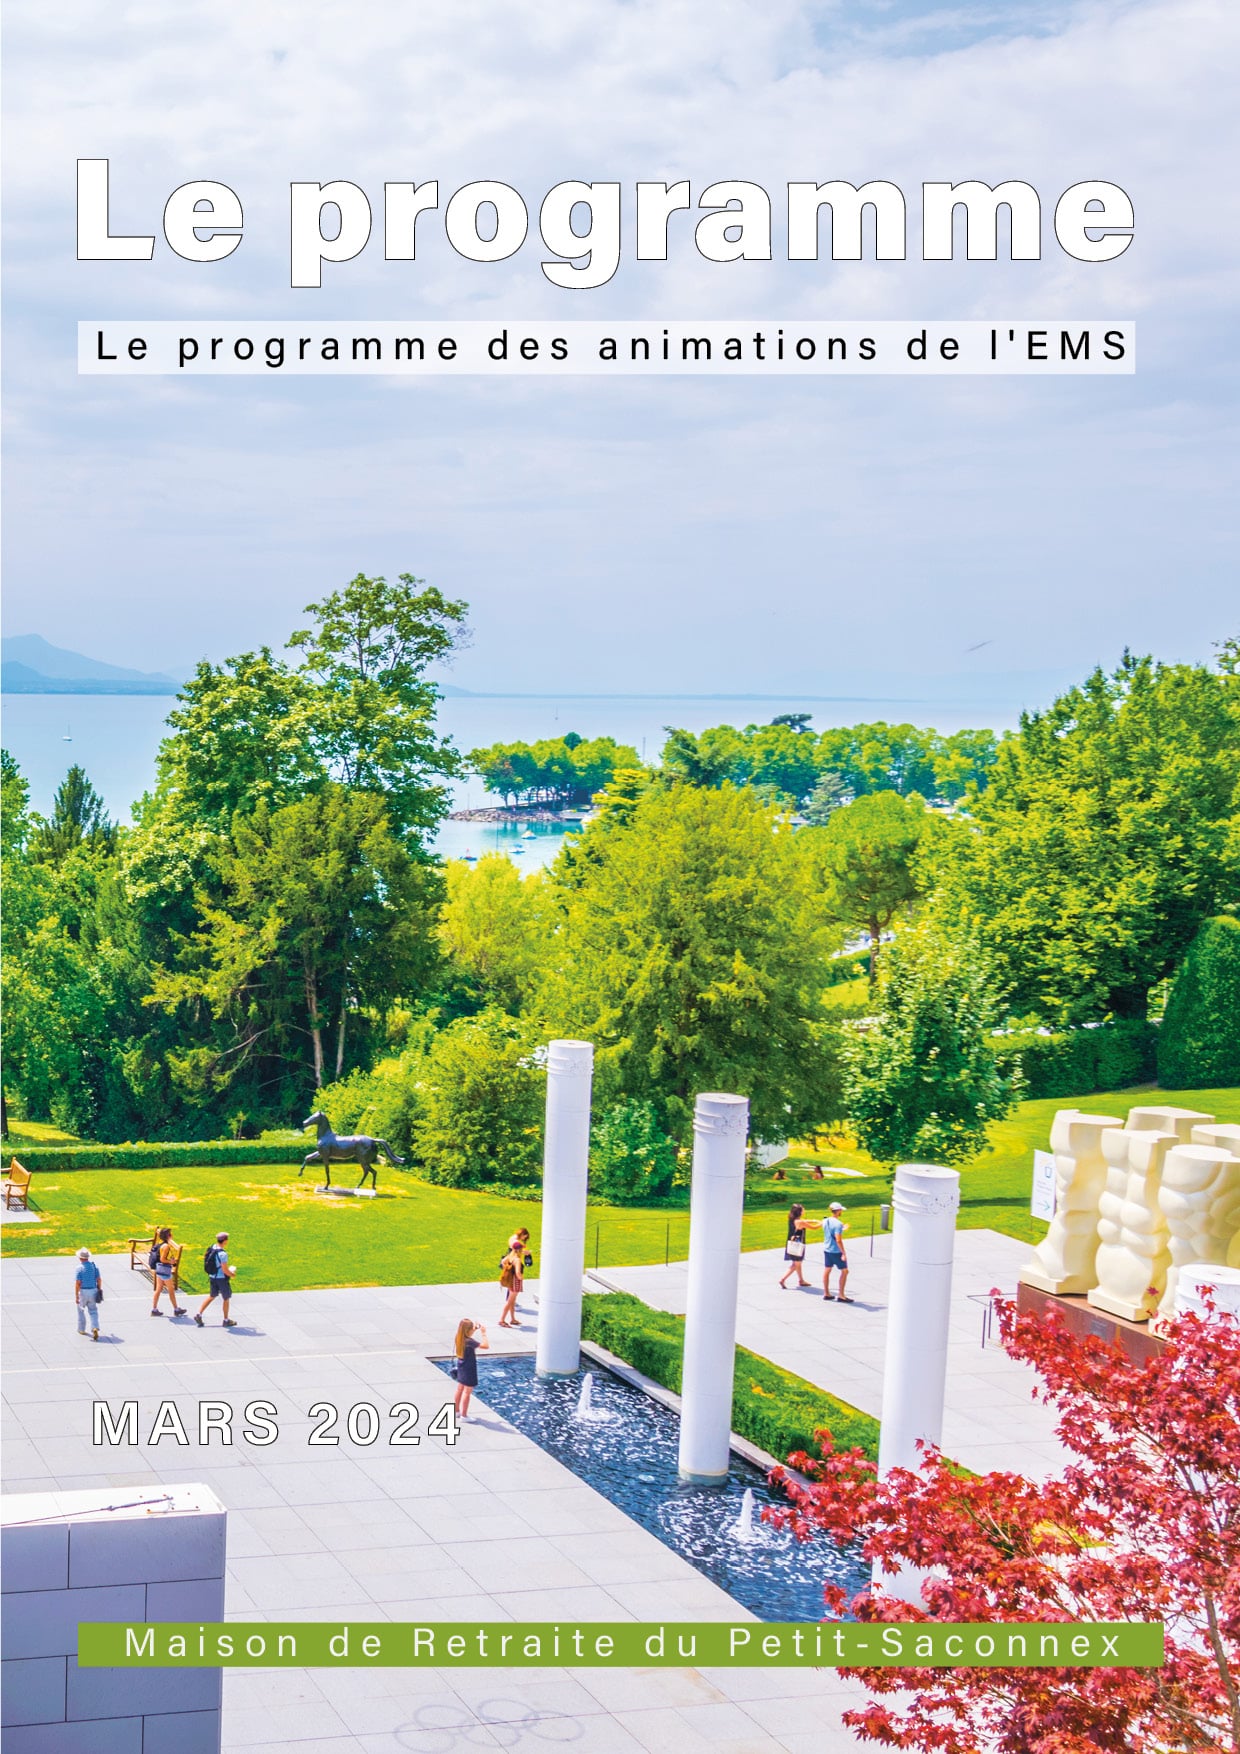 Le programme des animations de l'EMS du Petit-Saconnex en mars 2024